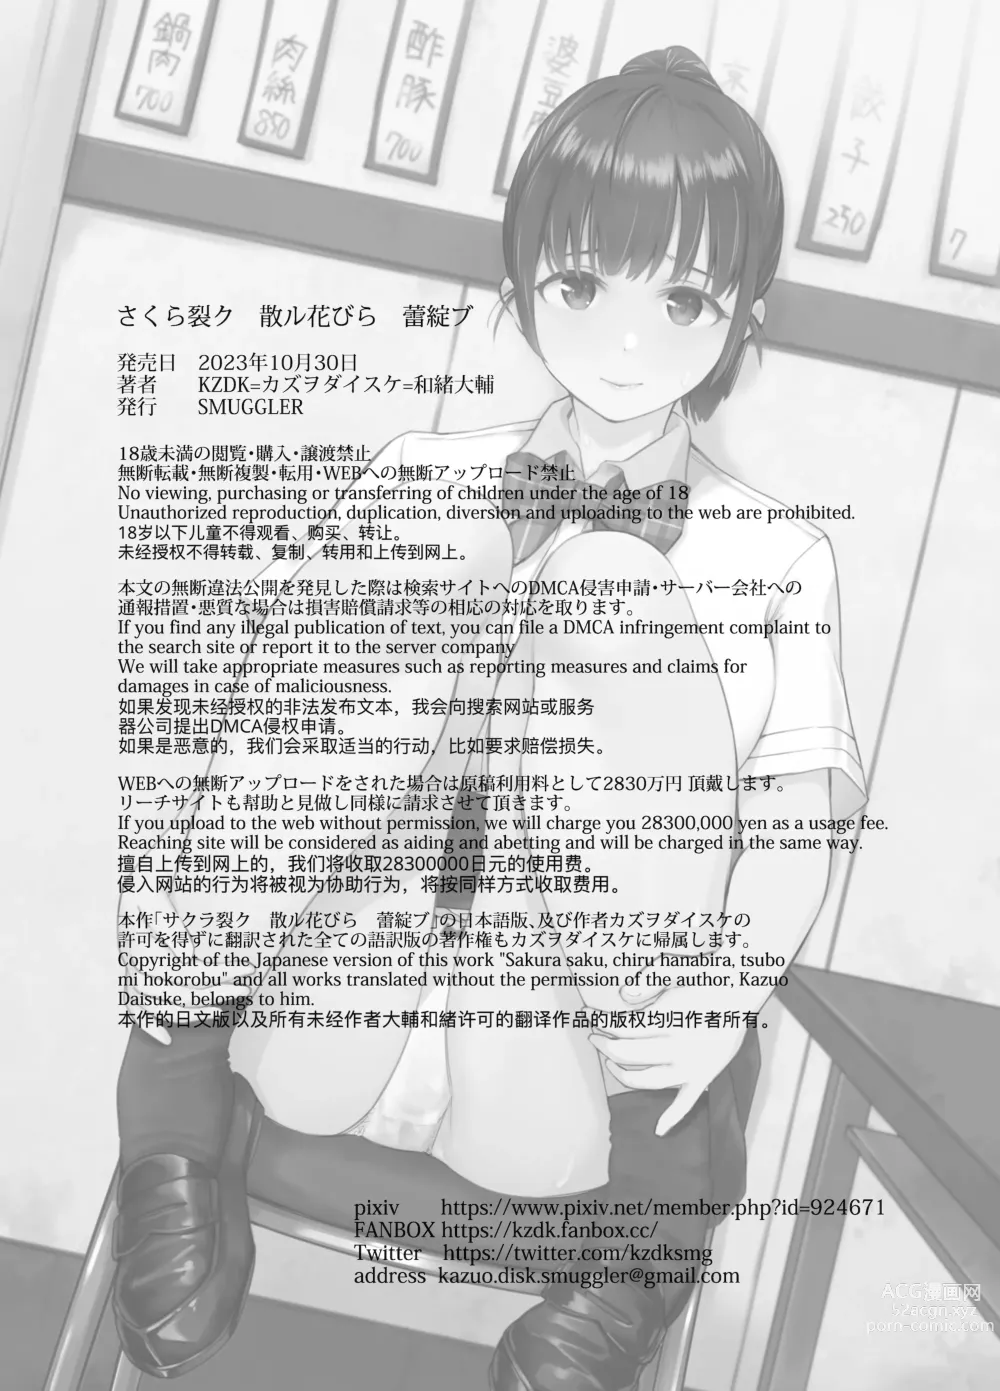 Page 39 of doujinshi Sakura Saku Chiru Hanabira Tsubomi Hokorobibu ~Ossan no Nikutsubo e to Ochi Hateta Saiai no Osananajimi Yoshioka Mio~